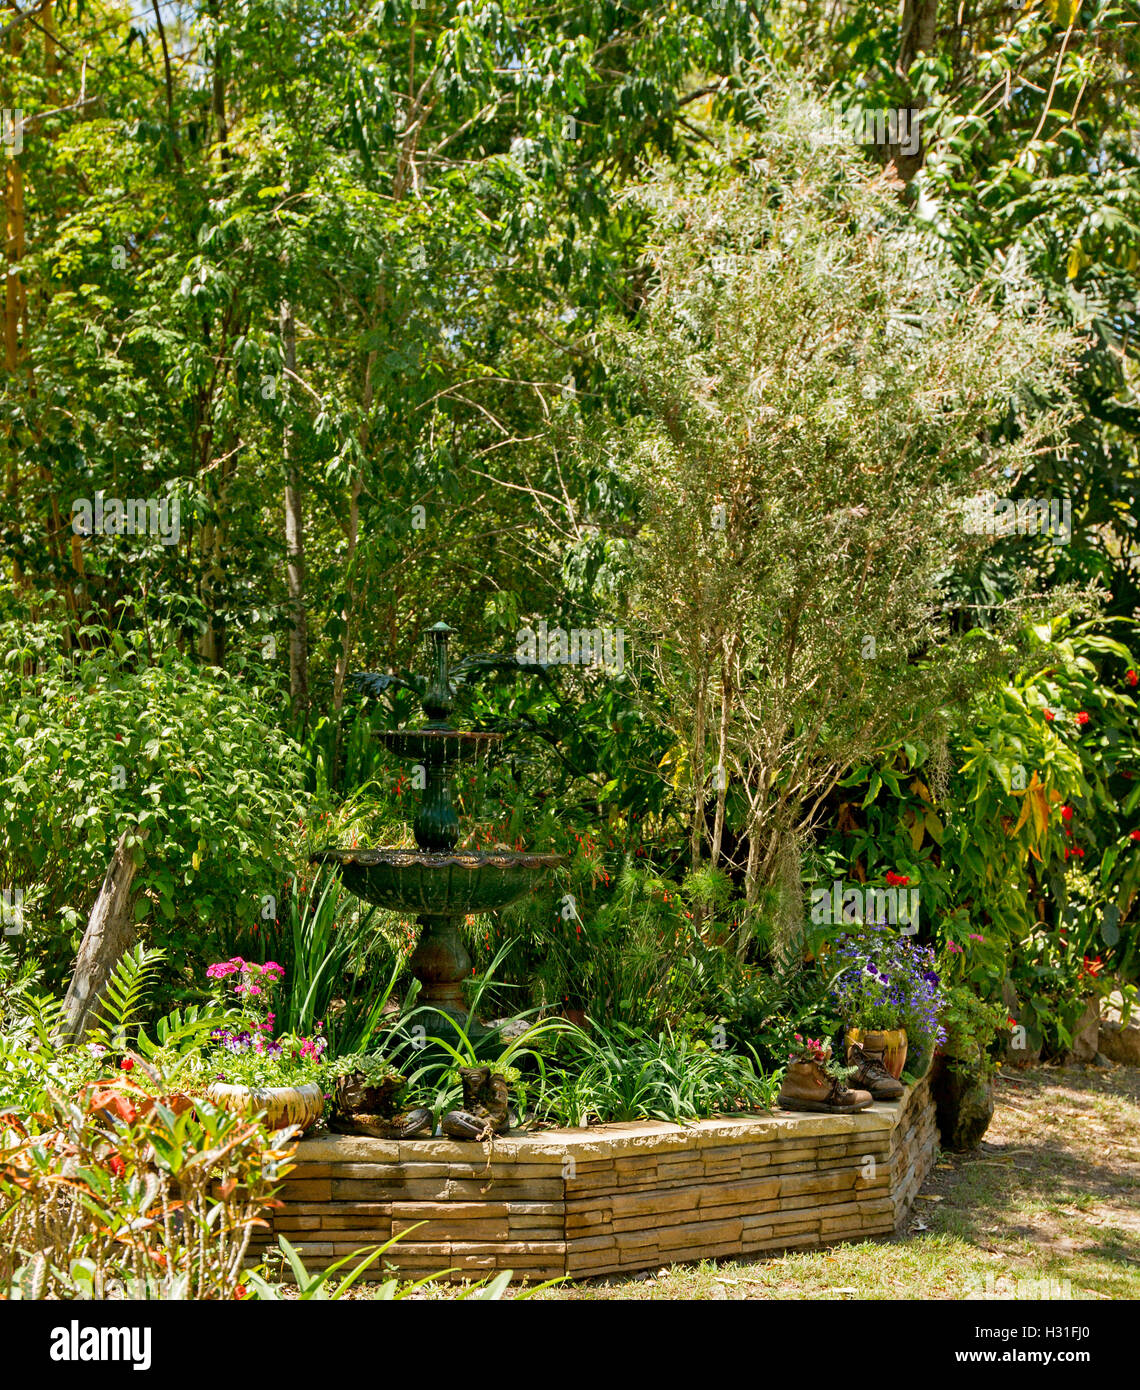 Giardino con fontana decorativa circondato dal verde smeraldo di fogliame, bassa parete di roccia, alberi e fiori colorati delle piante annuali Foto Stock